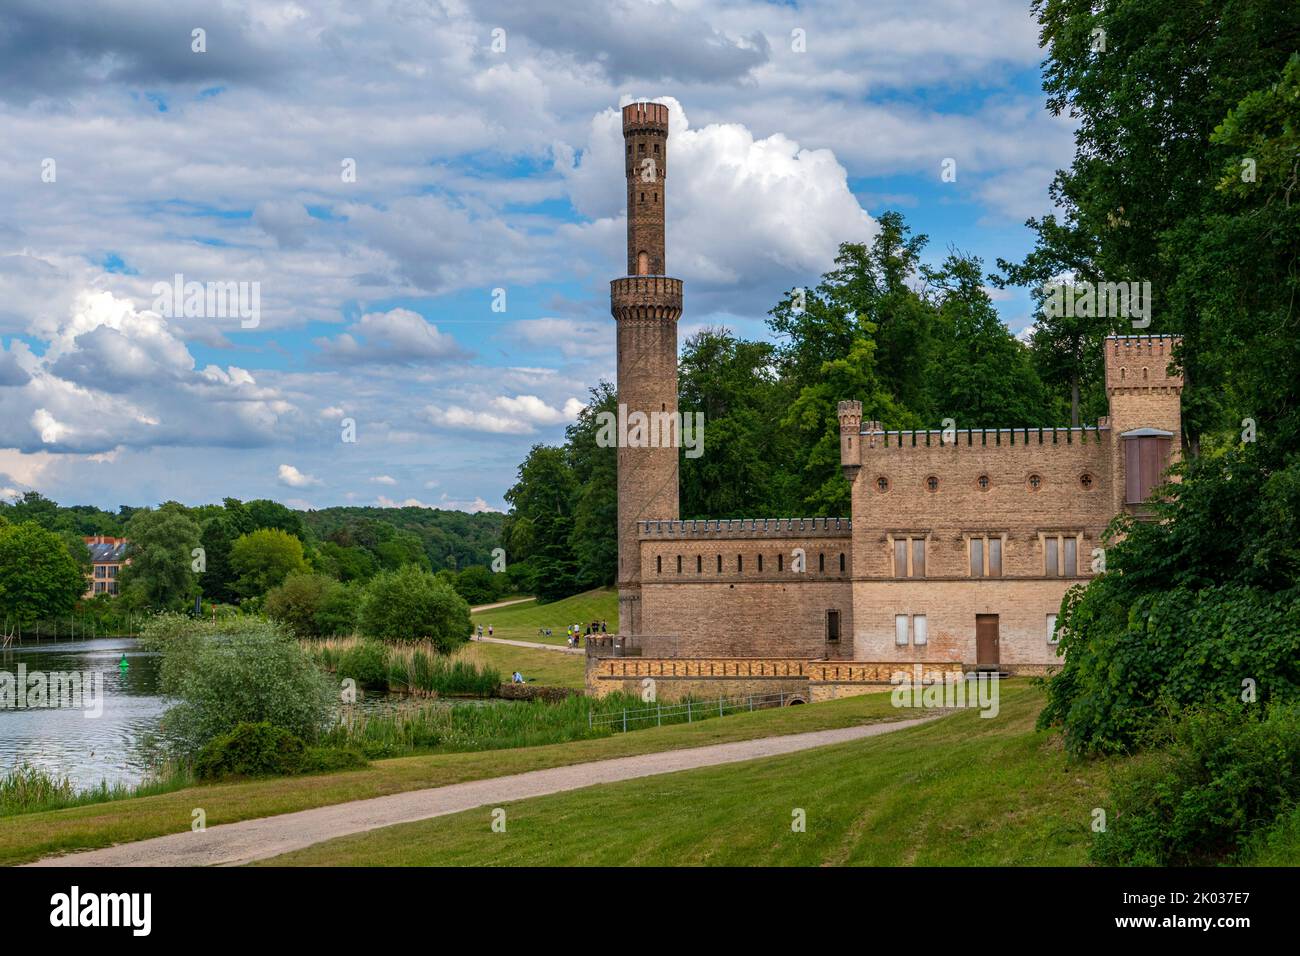 Dampfmaschinenhaus im Park Babelsberg, Potsdam, Brandenburg, Deutschland Stockfoto